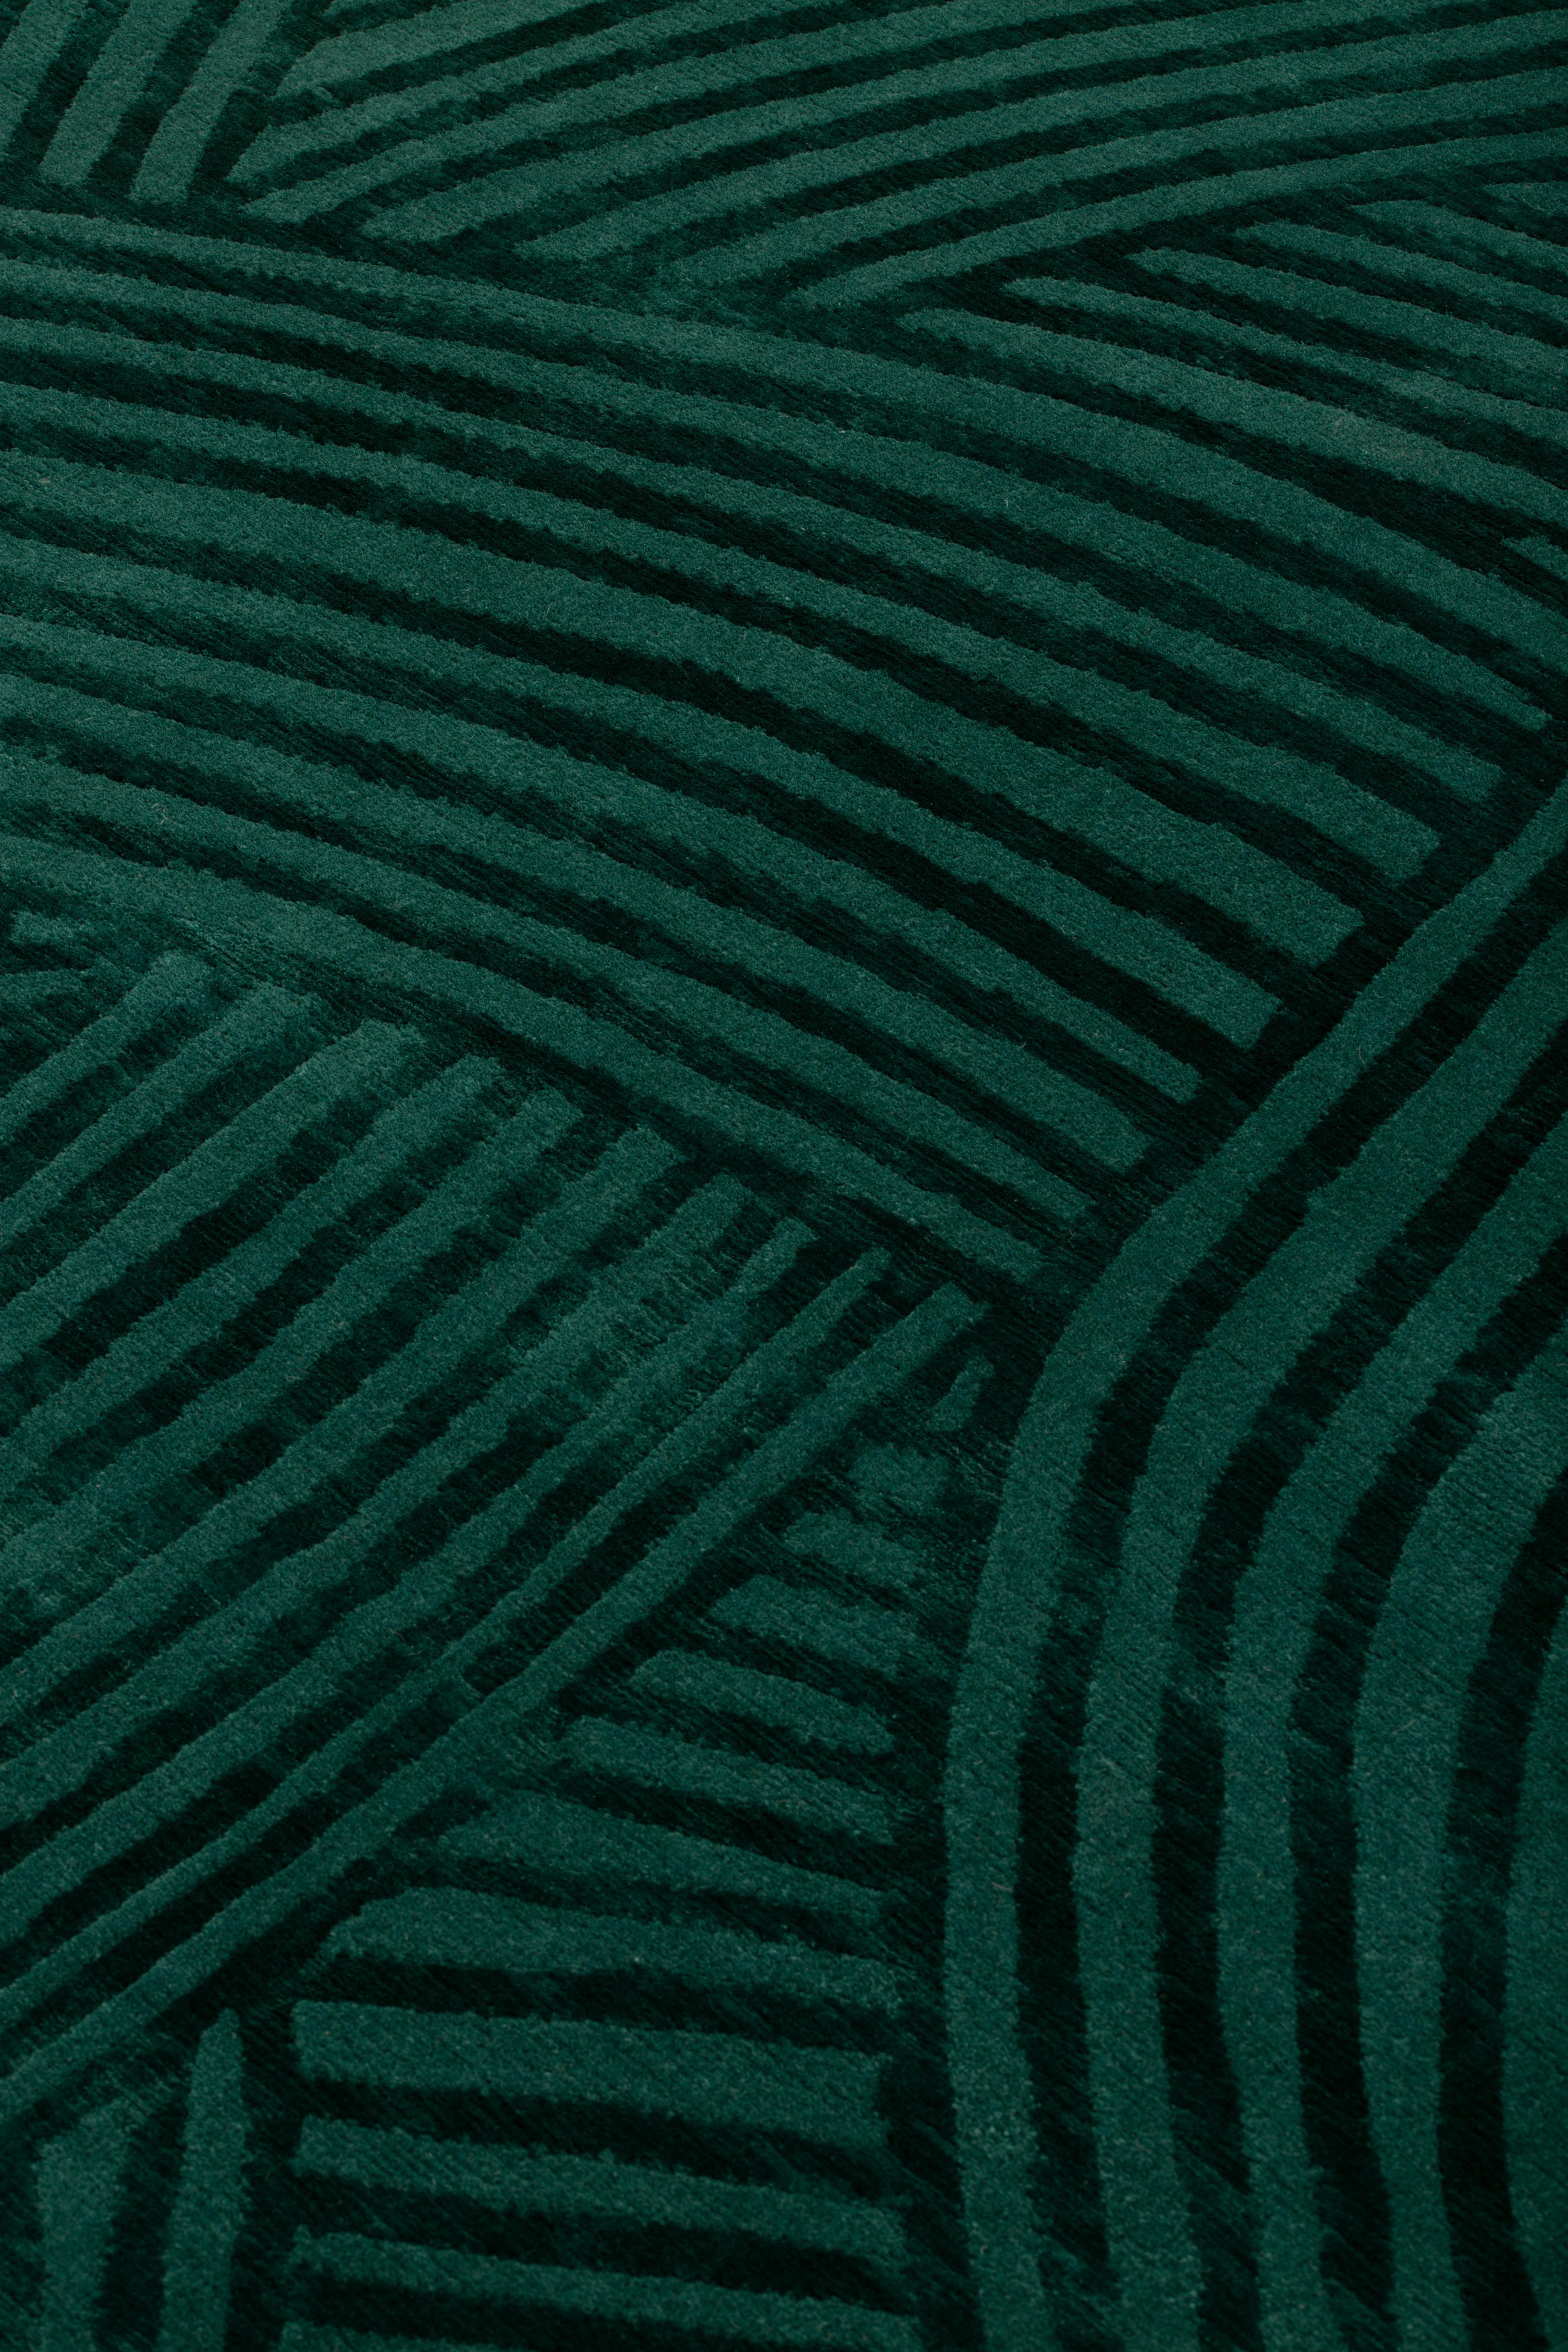 Né en France. Conçu à Milan. Produit au Népal.
cc-tapis est une société italienne qui produit des tapis contemporains noués à la main, créés au Népal par des artisans tibétains experts.
La société a été fondée par Nelcya Chamszadeh et Fabrizio